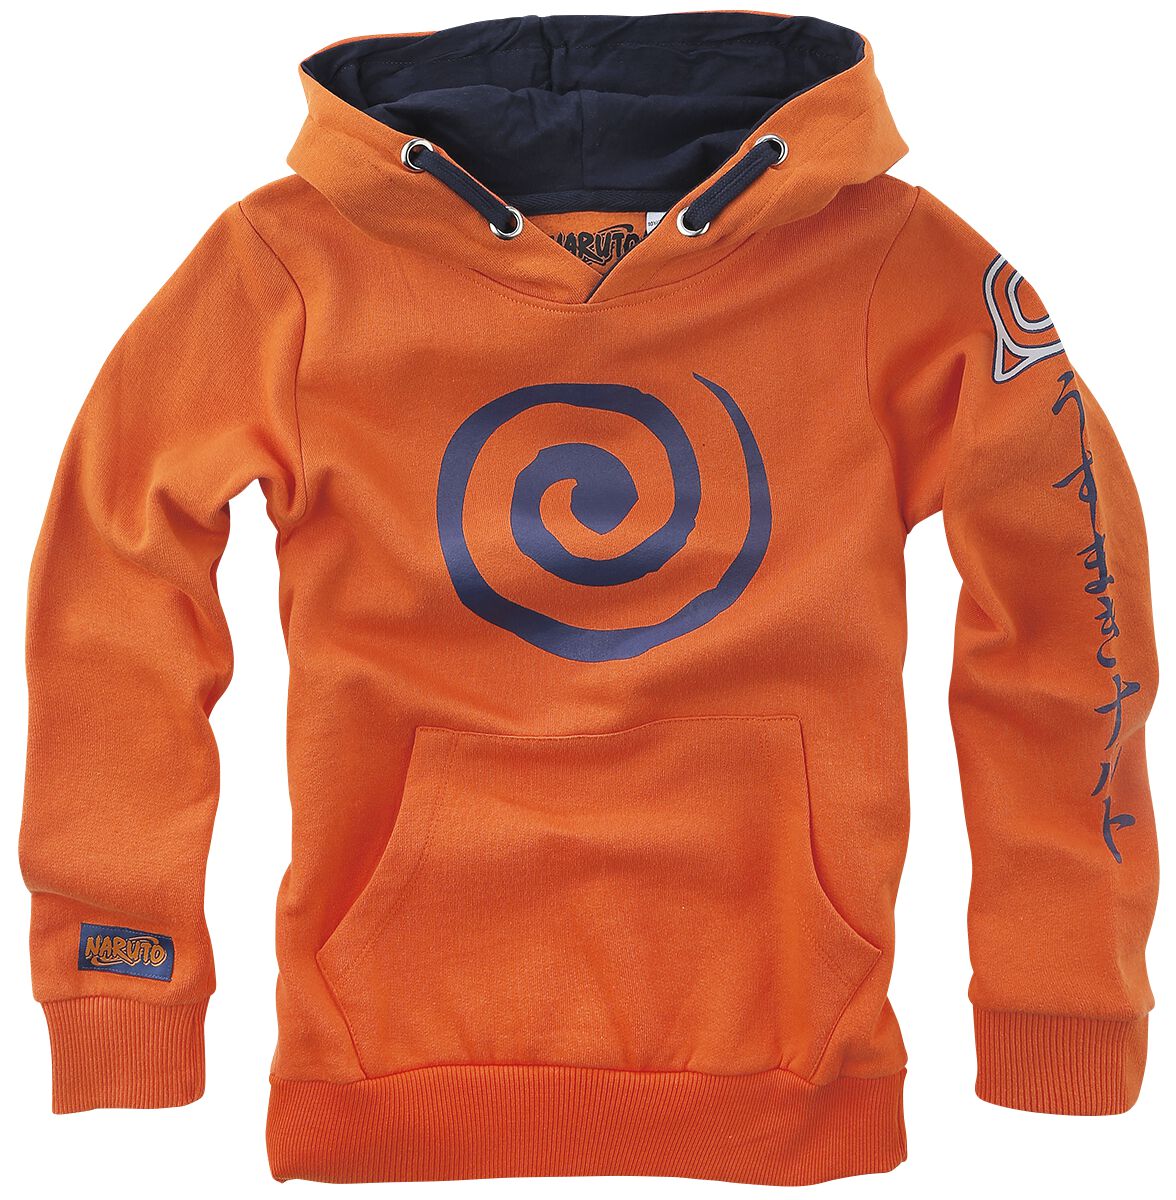 Naruto - Anime Kapuzenpullover - Kids - Sign - 116 bis 164 - Größe 140 - orange  - EMP exklusives Merchandise!